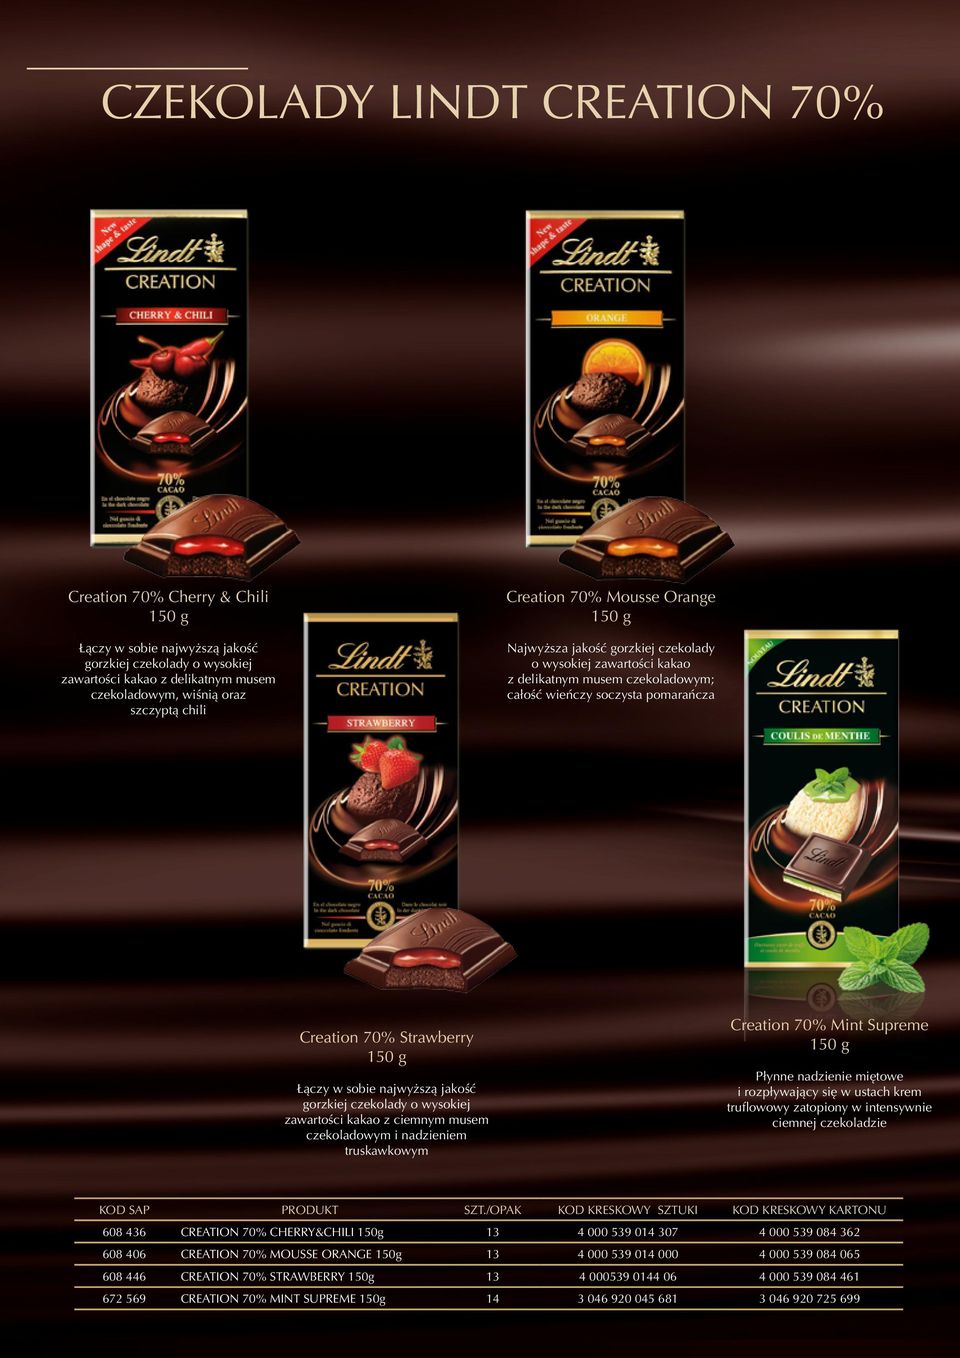 g Łączy w sobie najwyższą jakość gorzkiej czekolady o wysokiej zawartości kakao z ciemnym musem czekoladowym i nadzieniem truskawkowym Creation 70% Mint Supreme 150 g Płynne nadzienie miętowe i